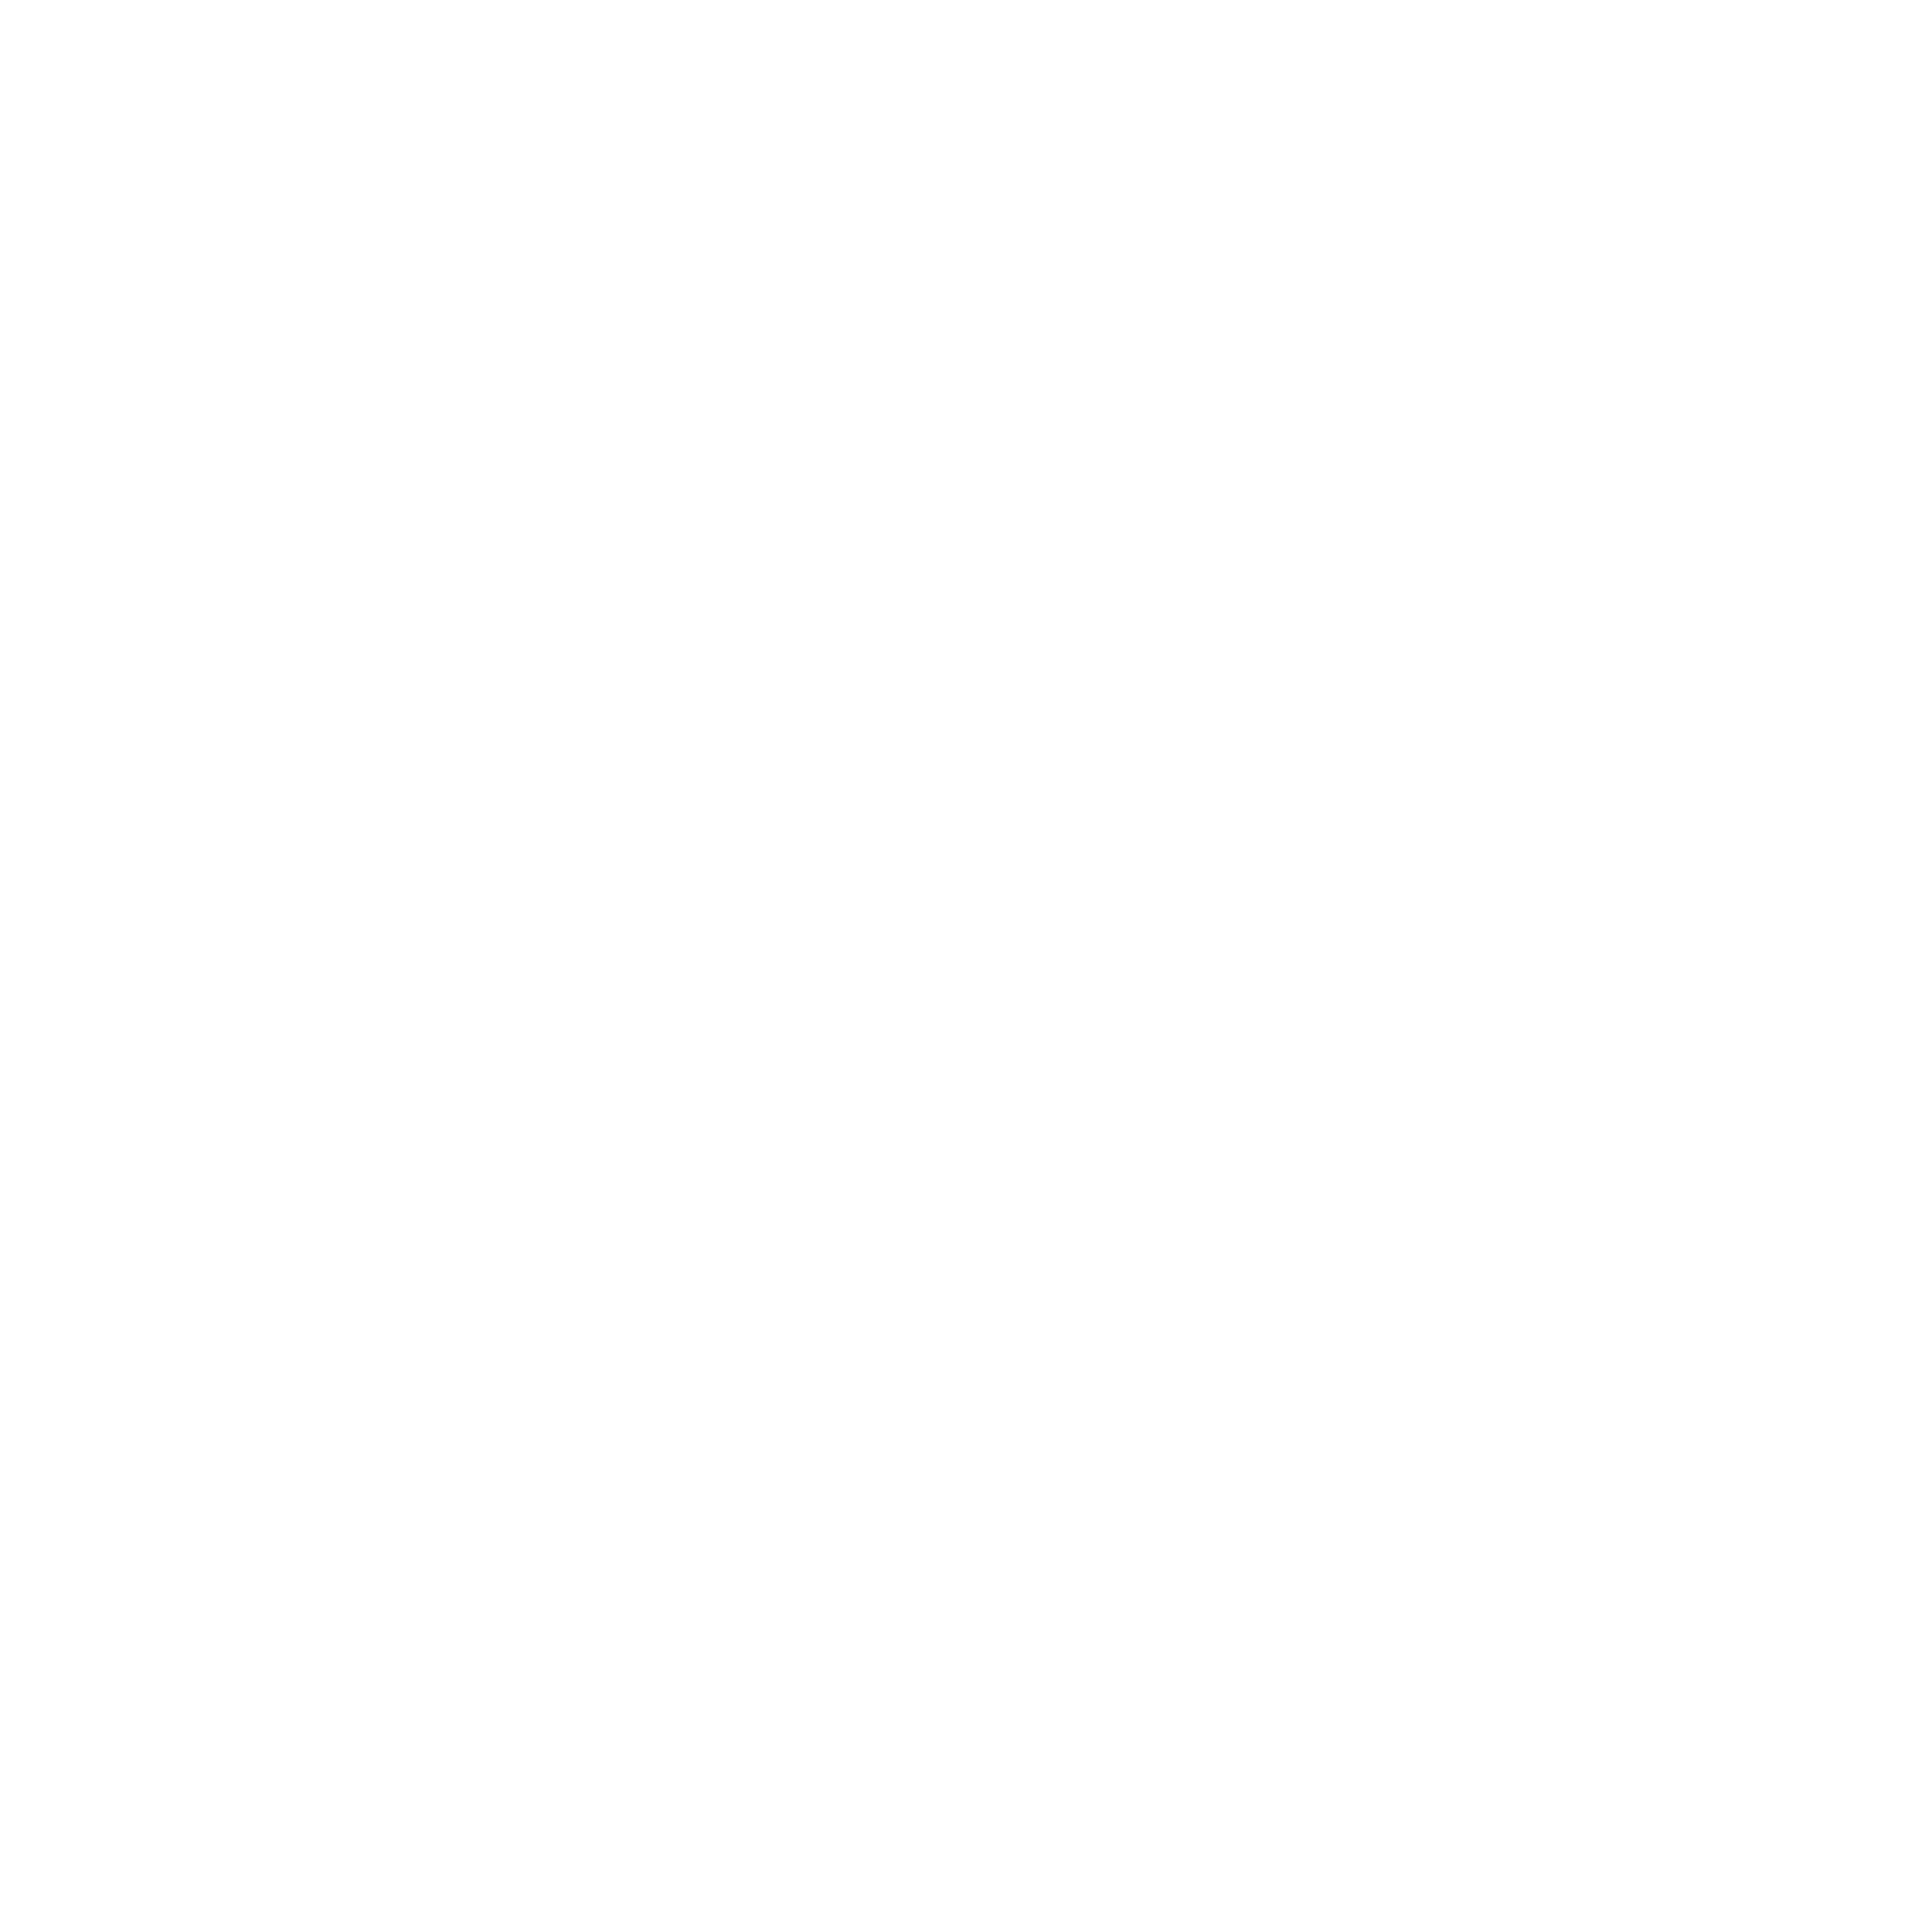 Maria Pino